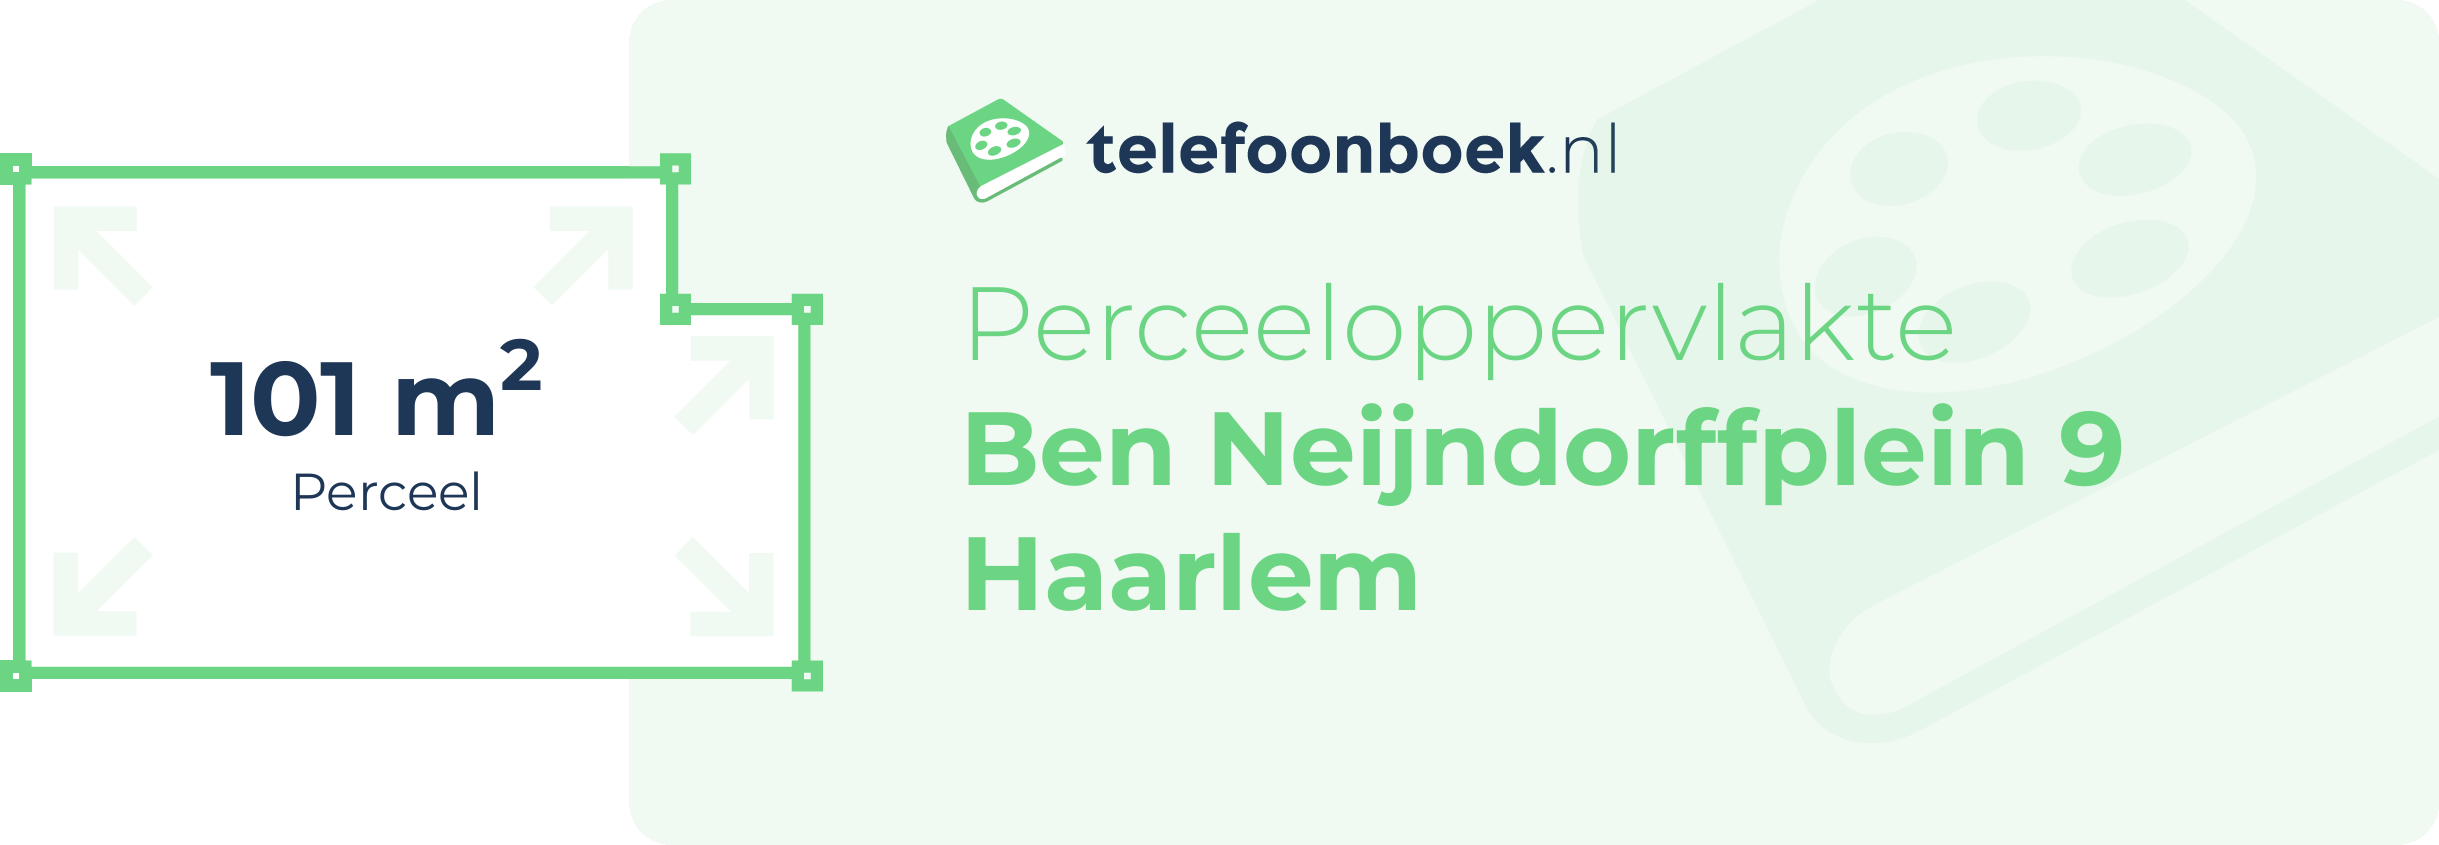 Perceeloppervlakte Ben Neijndorffplein 9 Haarlem